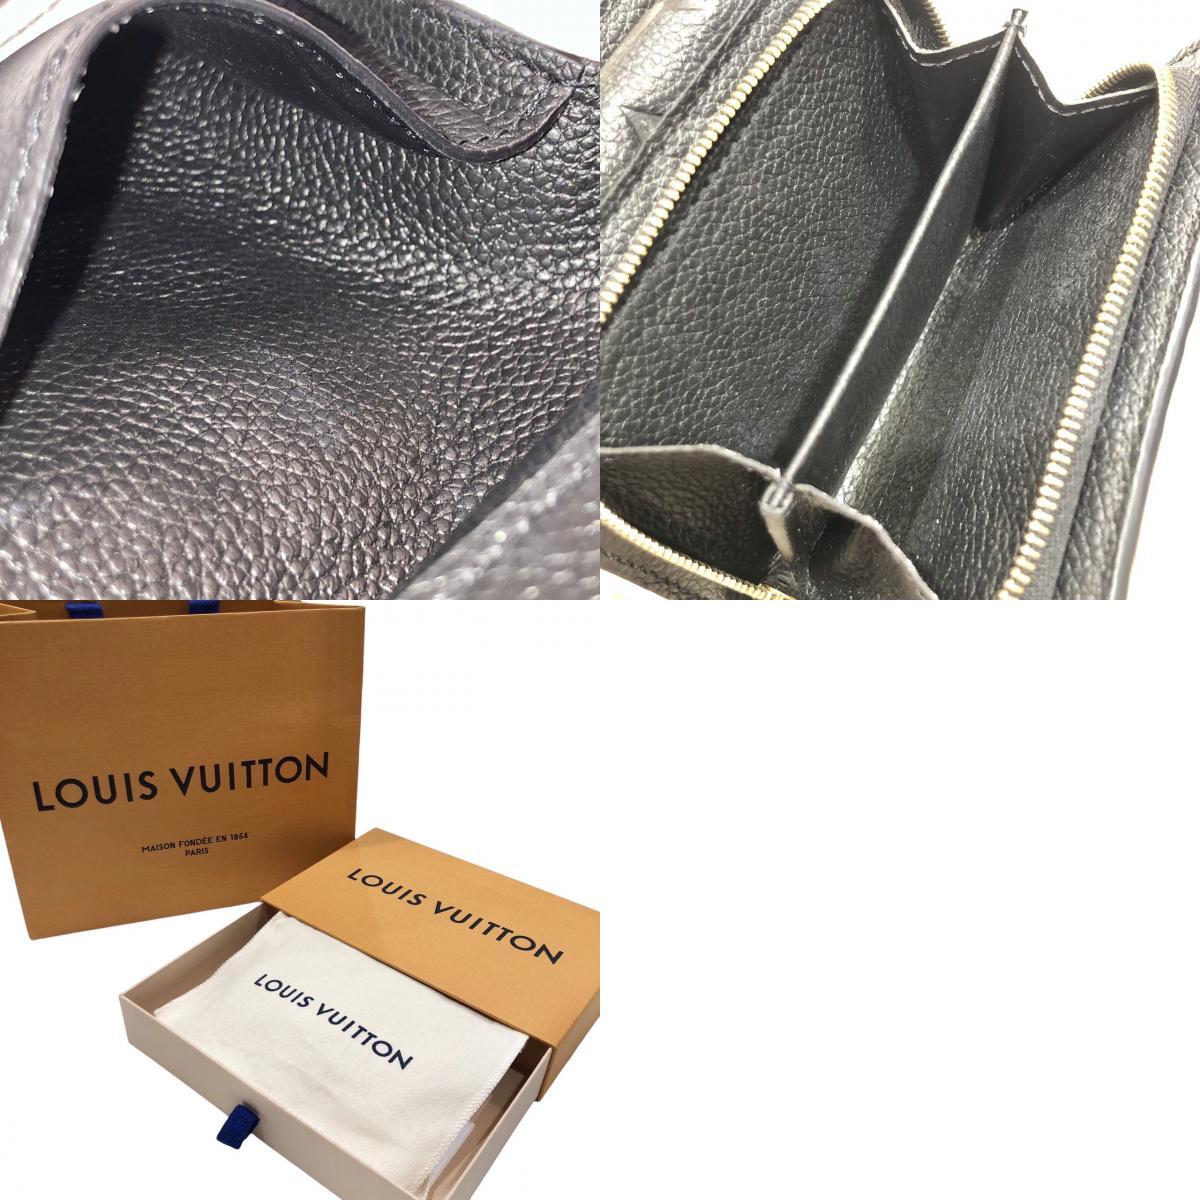 LOUIS VUITTON ルイヴィトン アンプラント ポルトフォイユ メティス コンパクト 財布 ブラック 箱付き M80880 RFIDの画像10